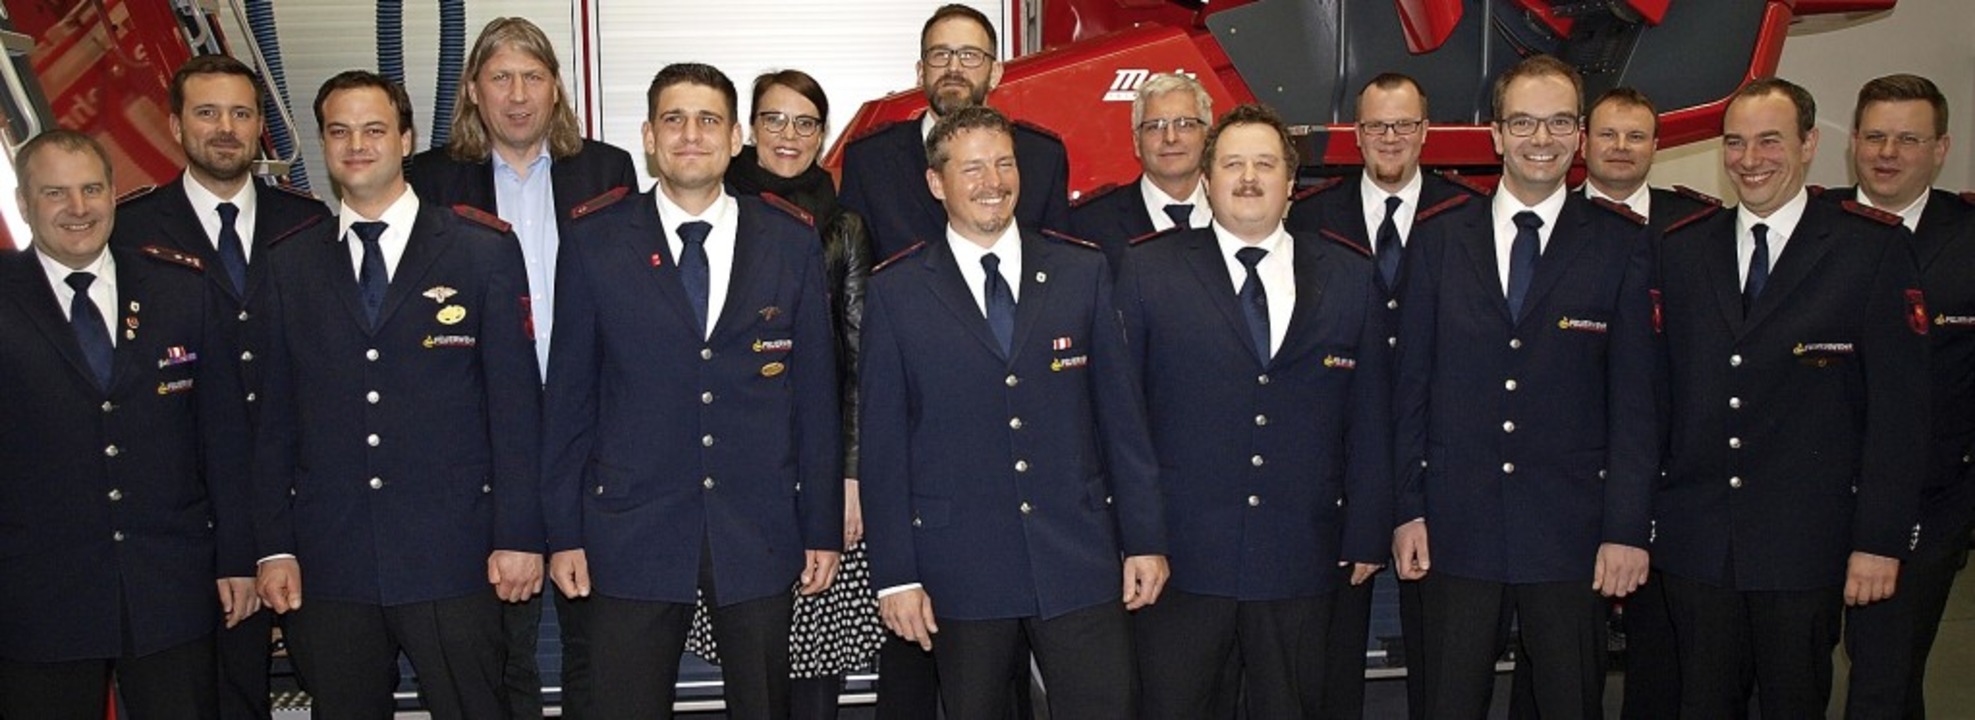 Die Feuerwehrabteilung Lörrach mit Geehrten, Beförderten und Vertretern der Stadtverwaltung.